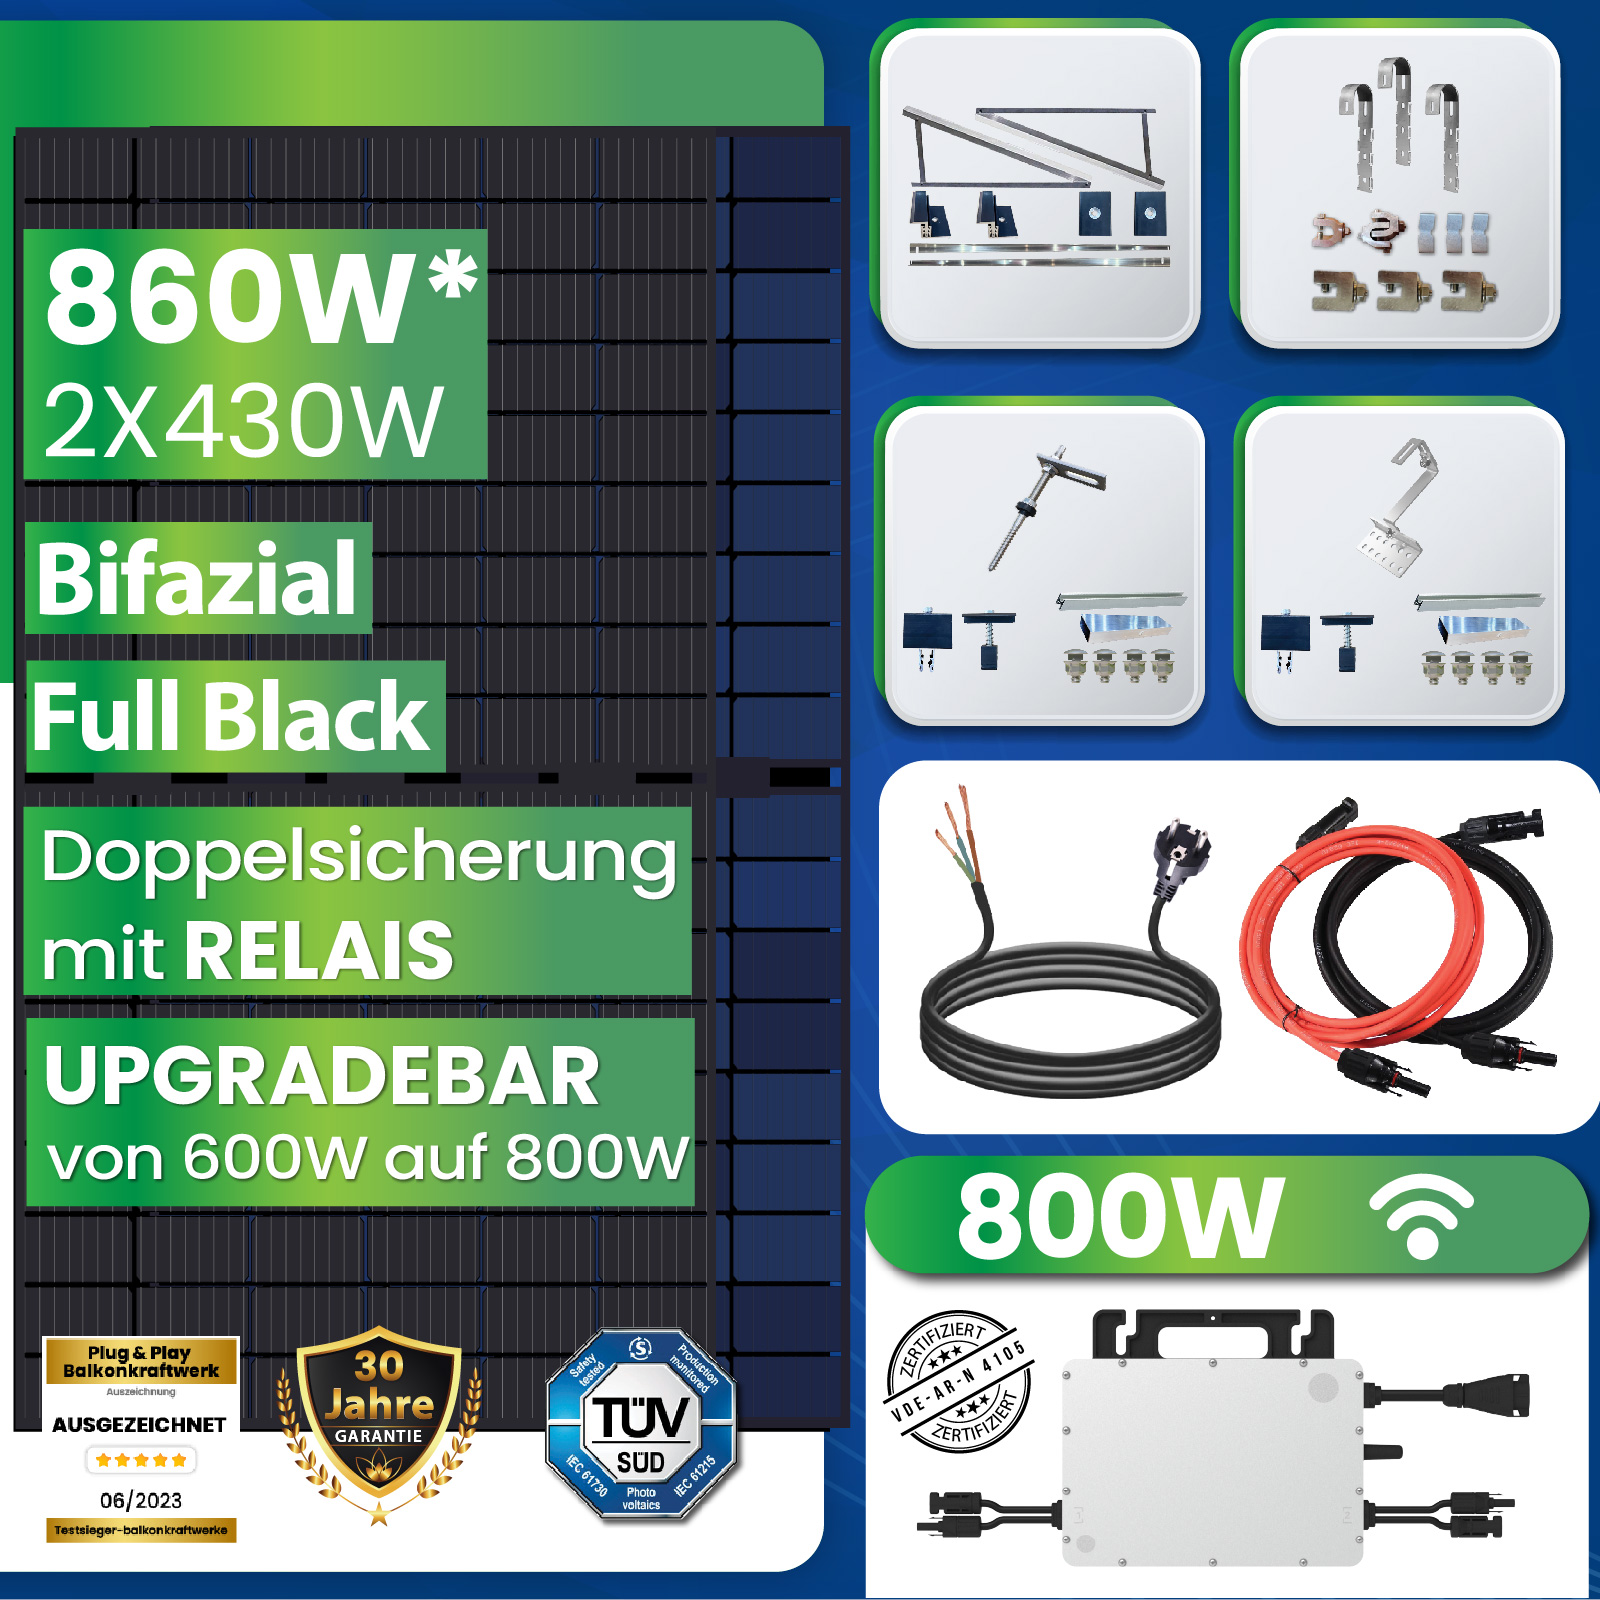 860W Balkonkraftwerk Komplettset mit 430W Bifaziale Solarpanele, 800W  Wechselrichter und Montagepaket